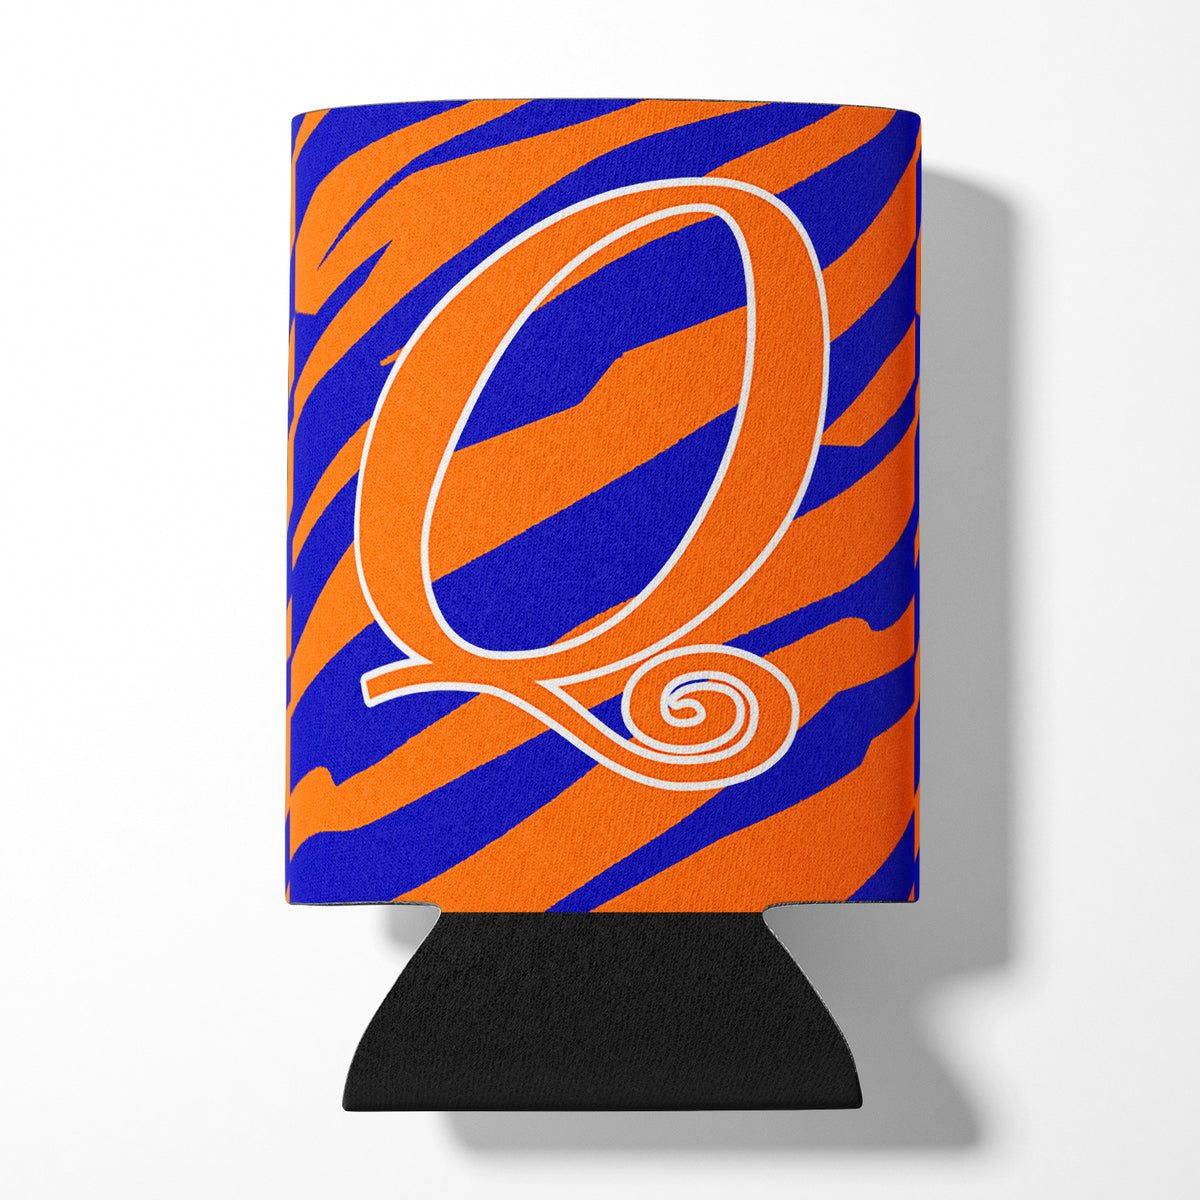 Letter Q Initial Monogram - Tiger Stripe Blue and Orange Can Beverage Insulator Hugger.